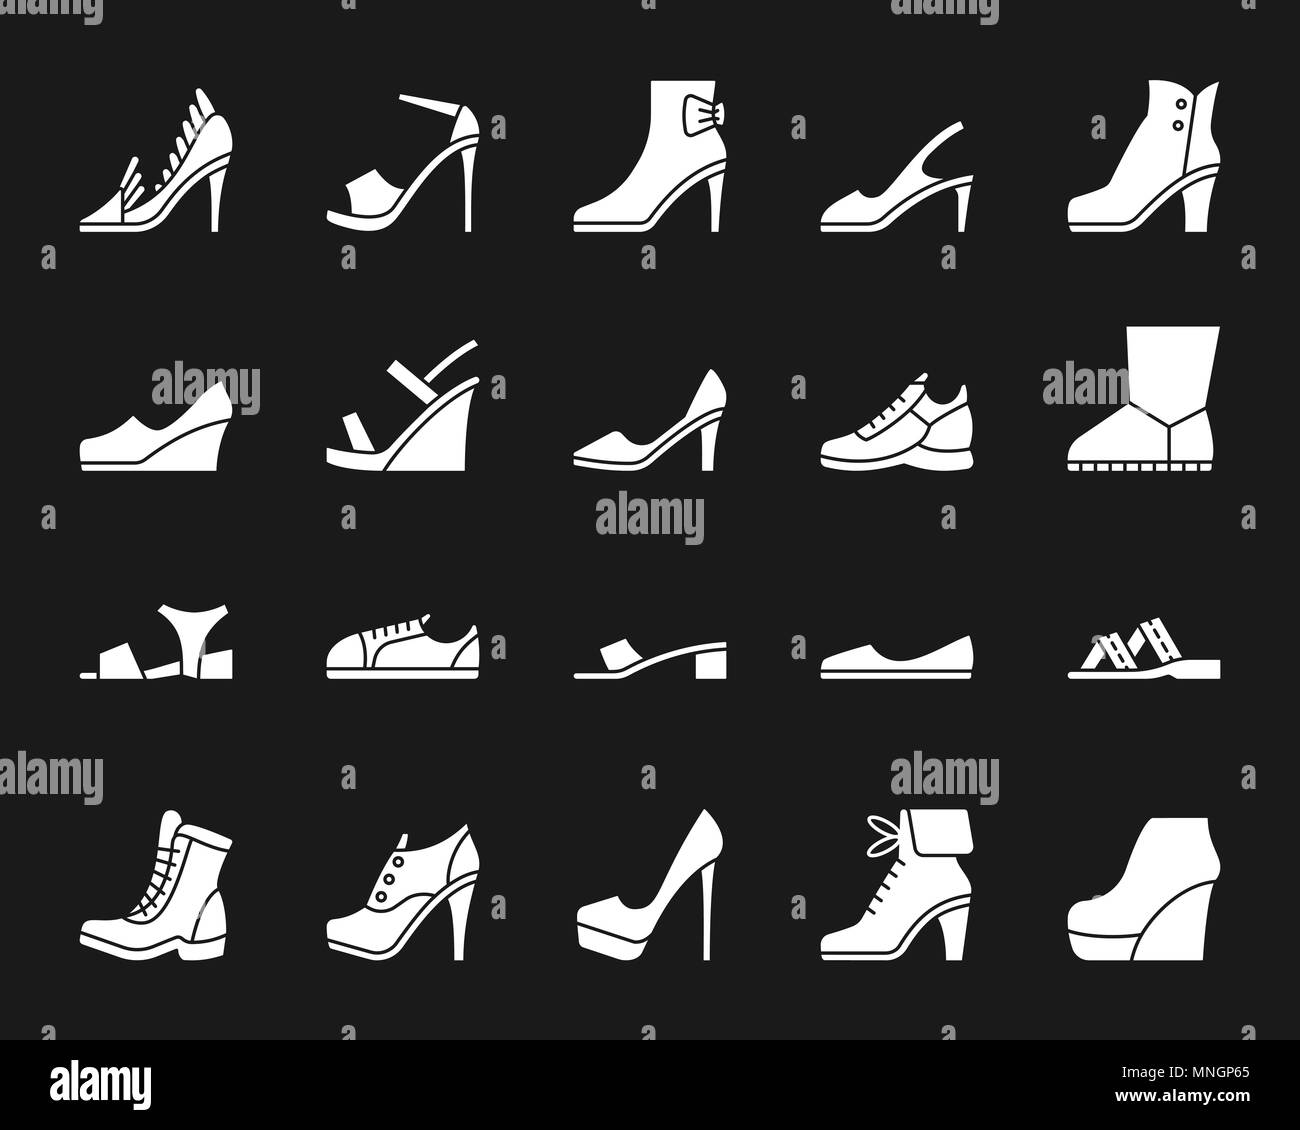 Calzature donna silhouette set di icone. Web kit di segno di calzature. Moda pittogramma monocromatica collezione include boot, pantofole sneakers. Semplice bianco sy Illustrazione Vettoriale